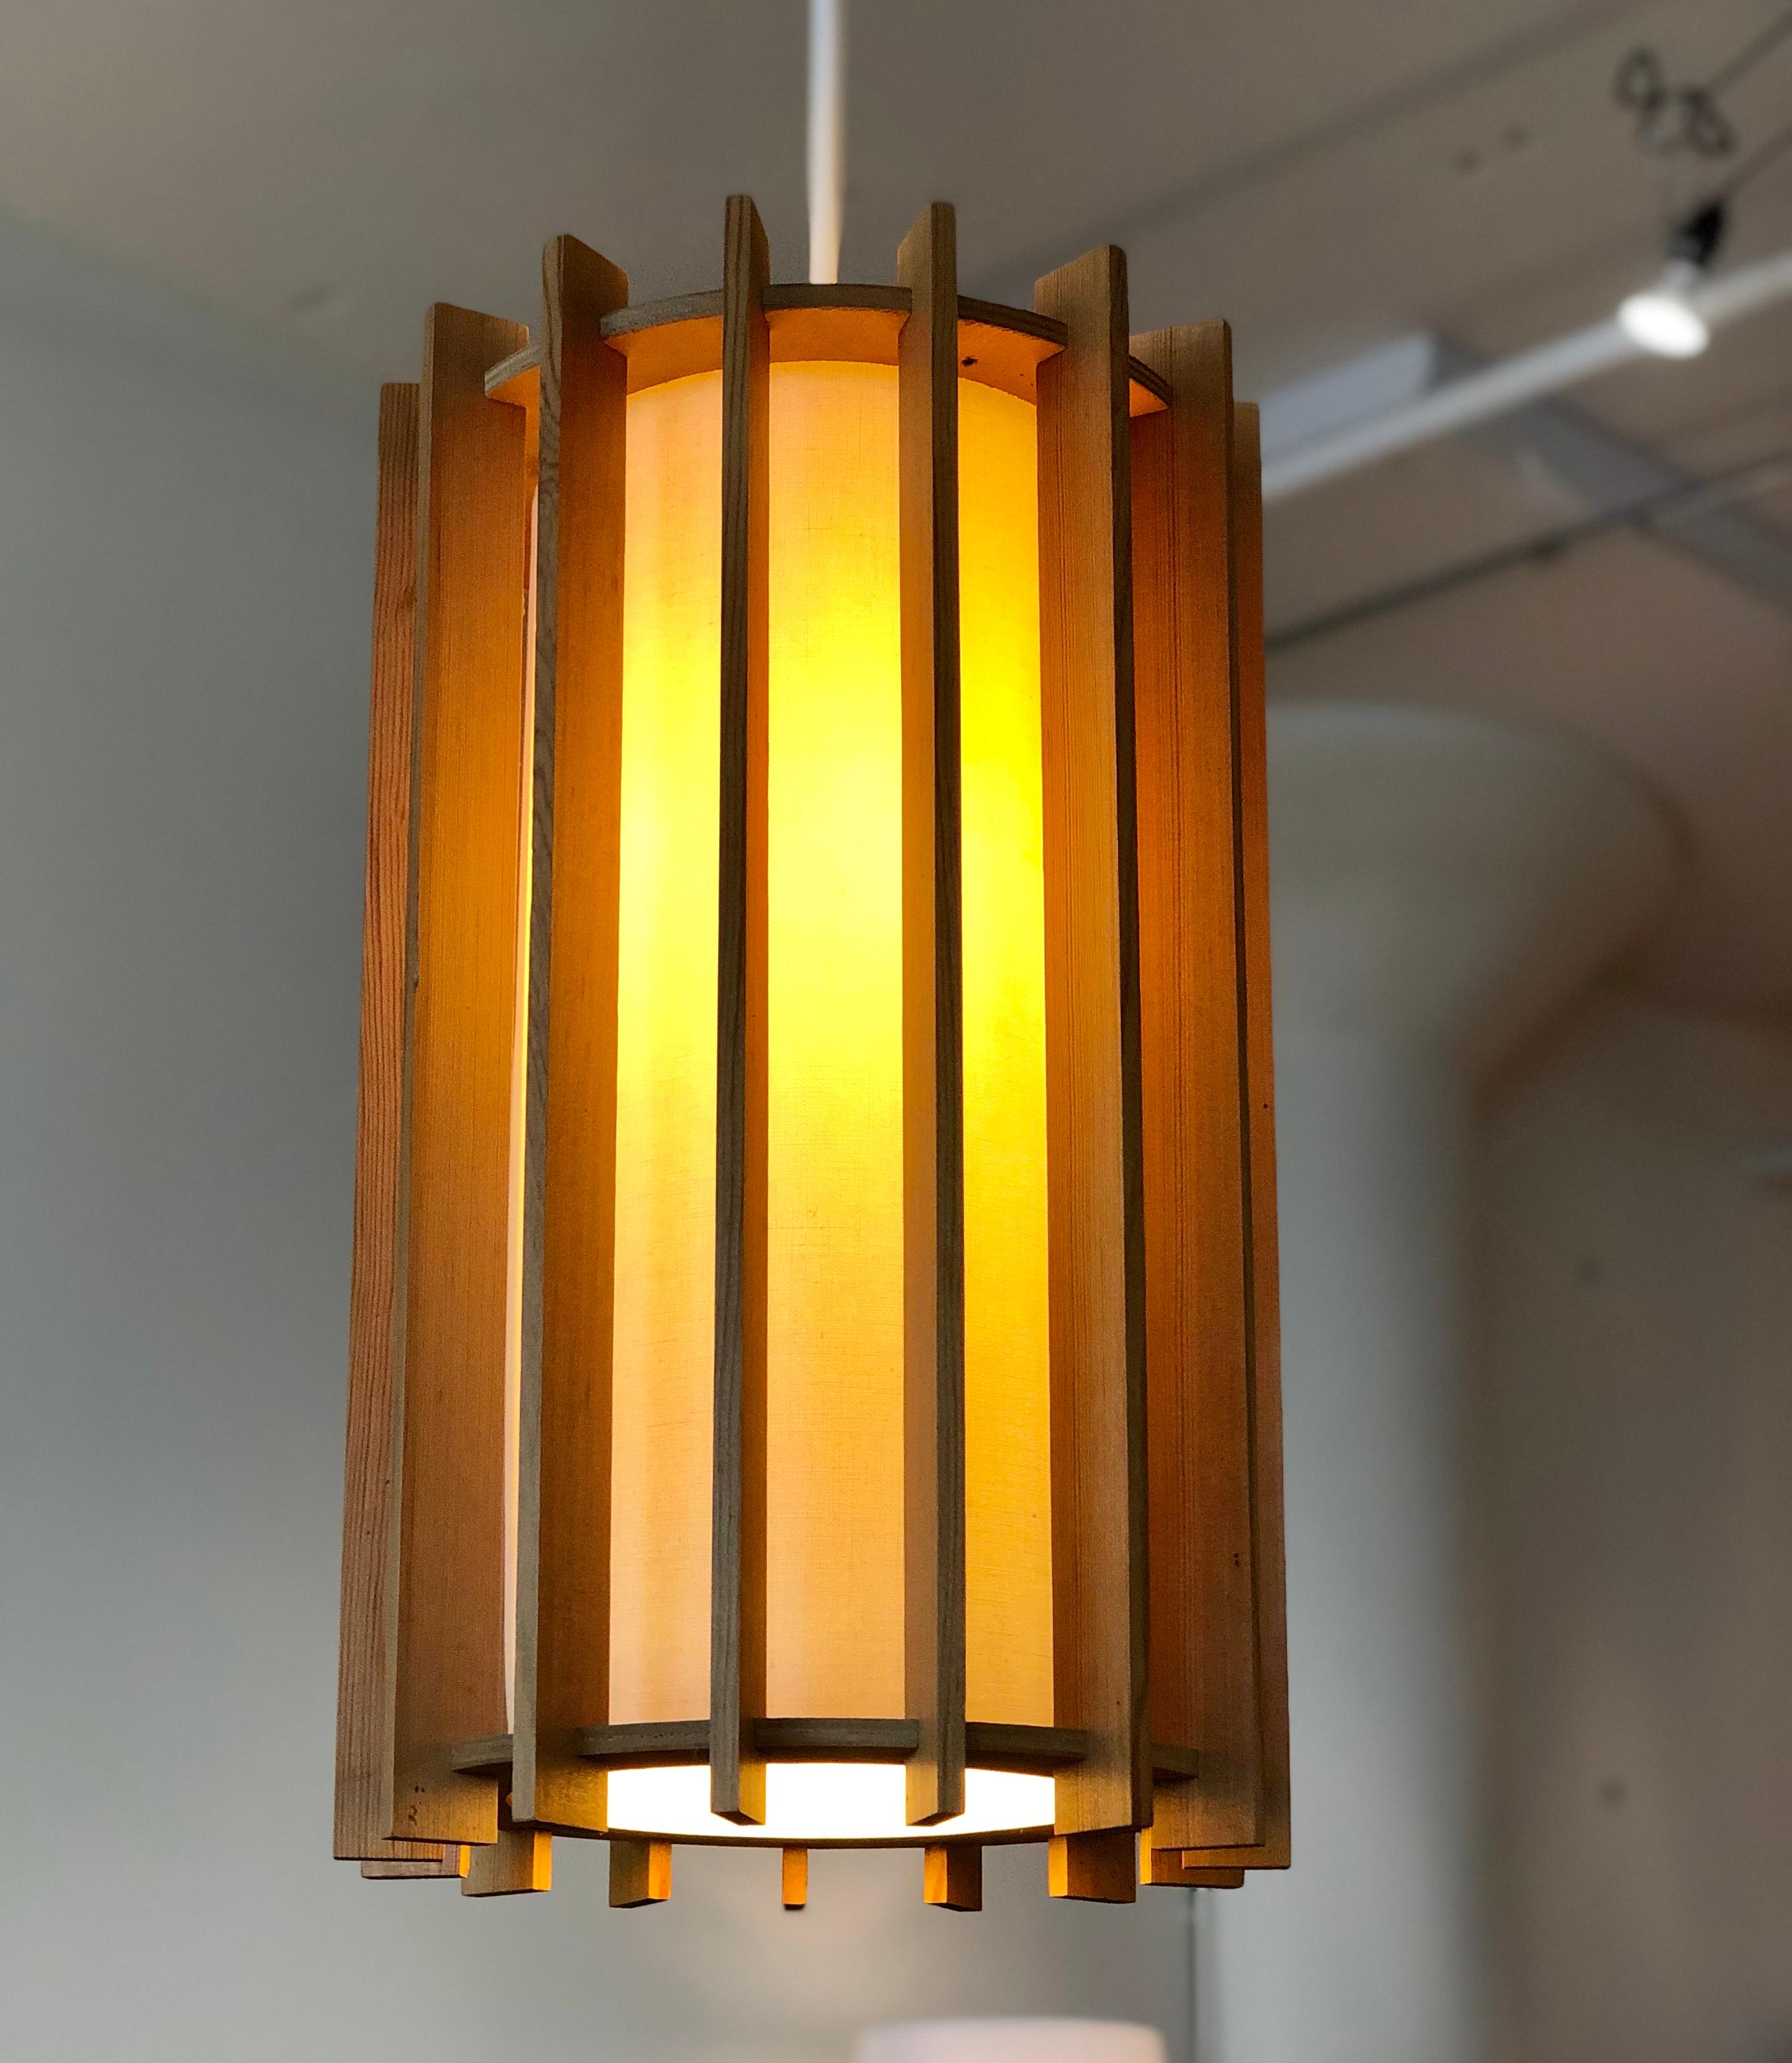 Scandinavian Modern Danish Modern Pendant Light Fixture with Fir Slats